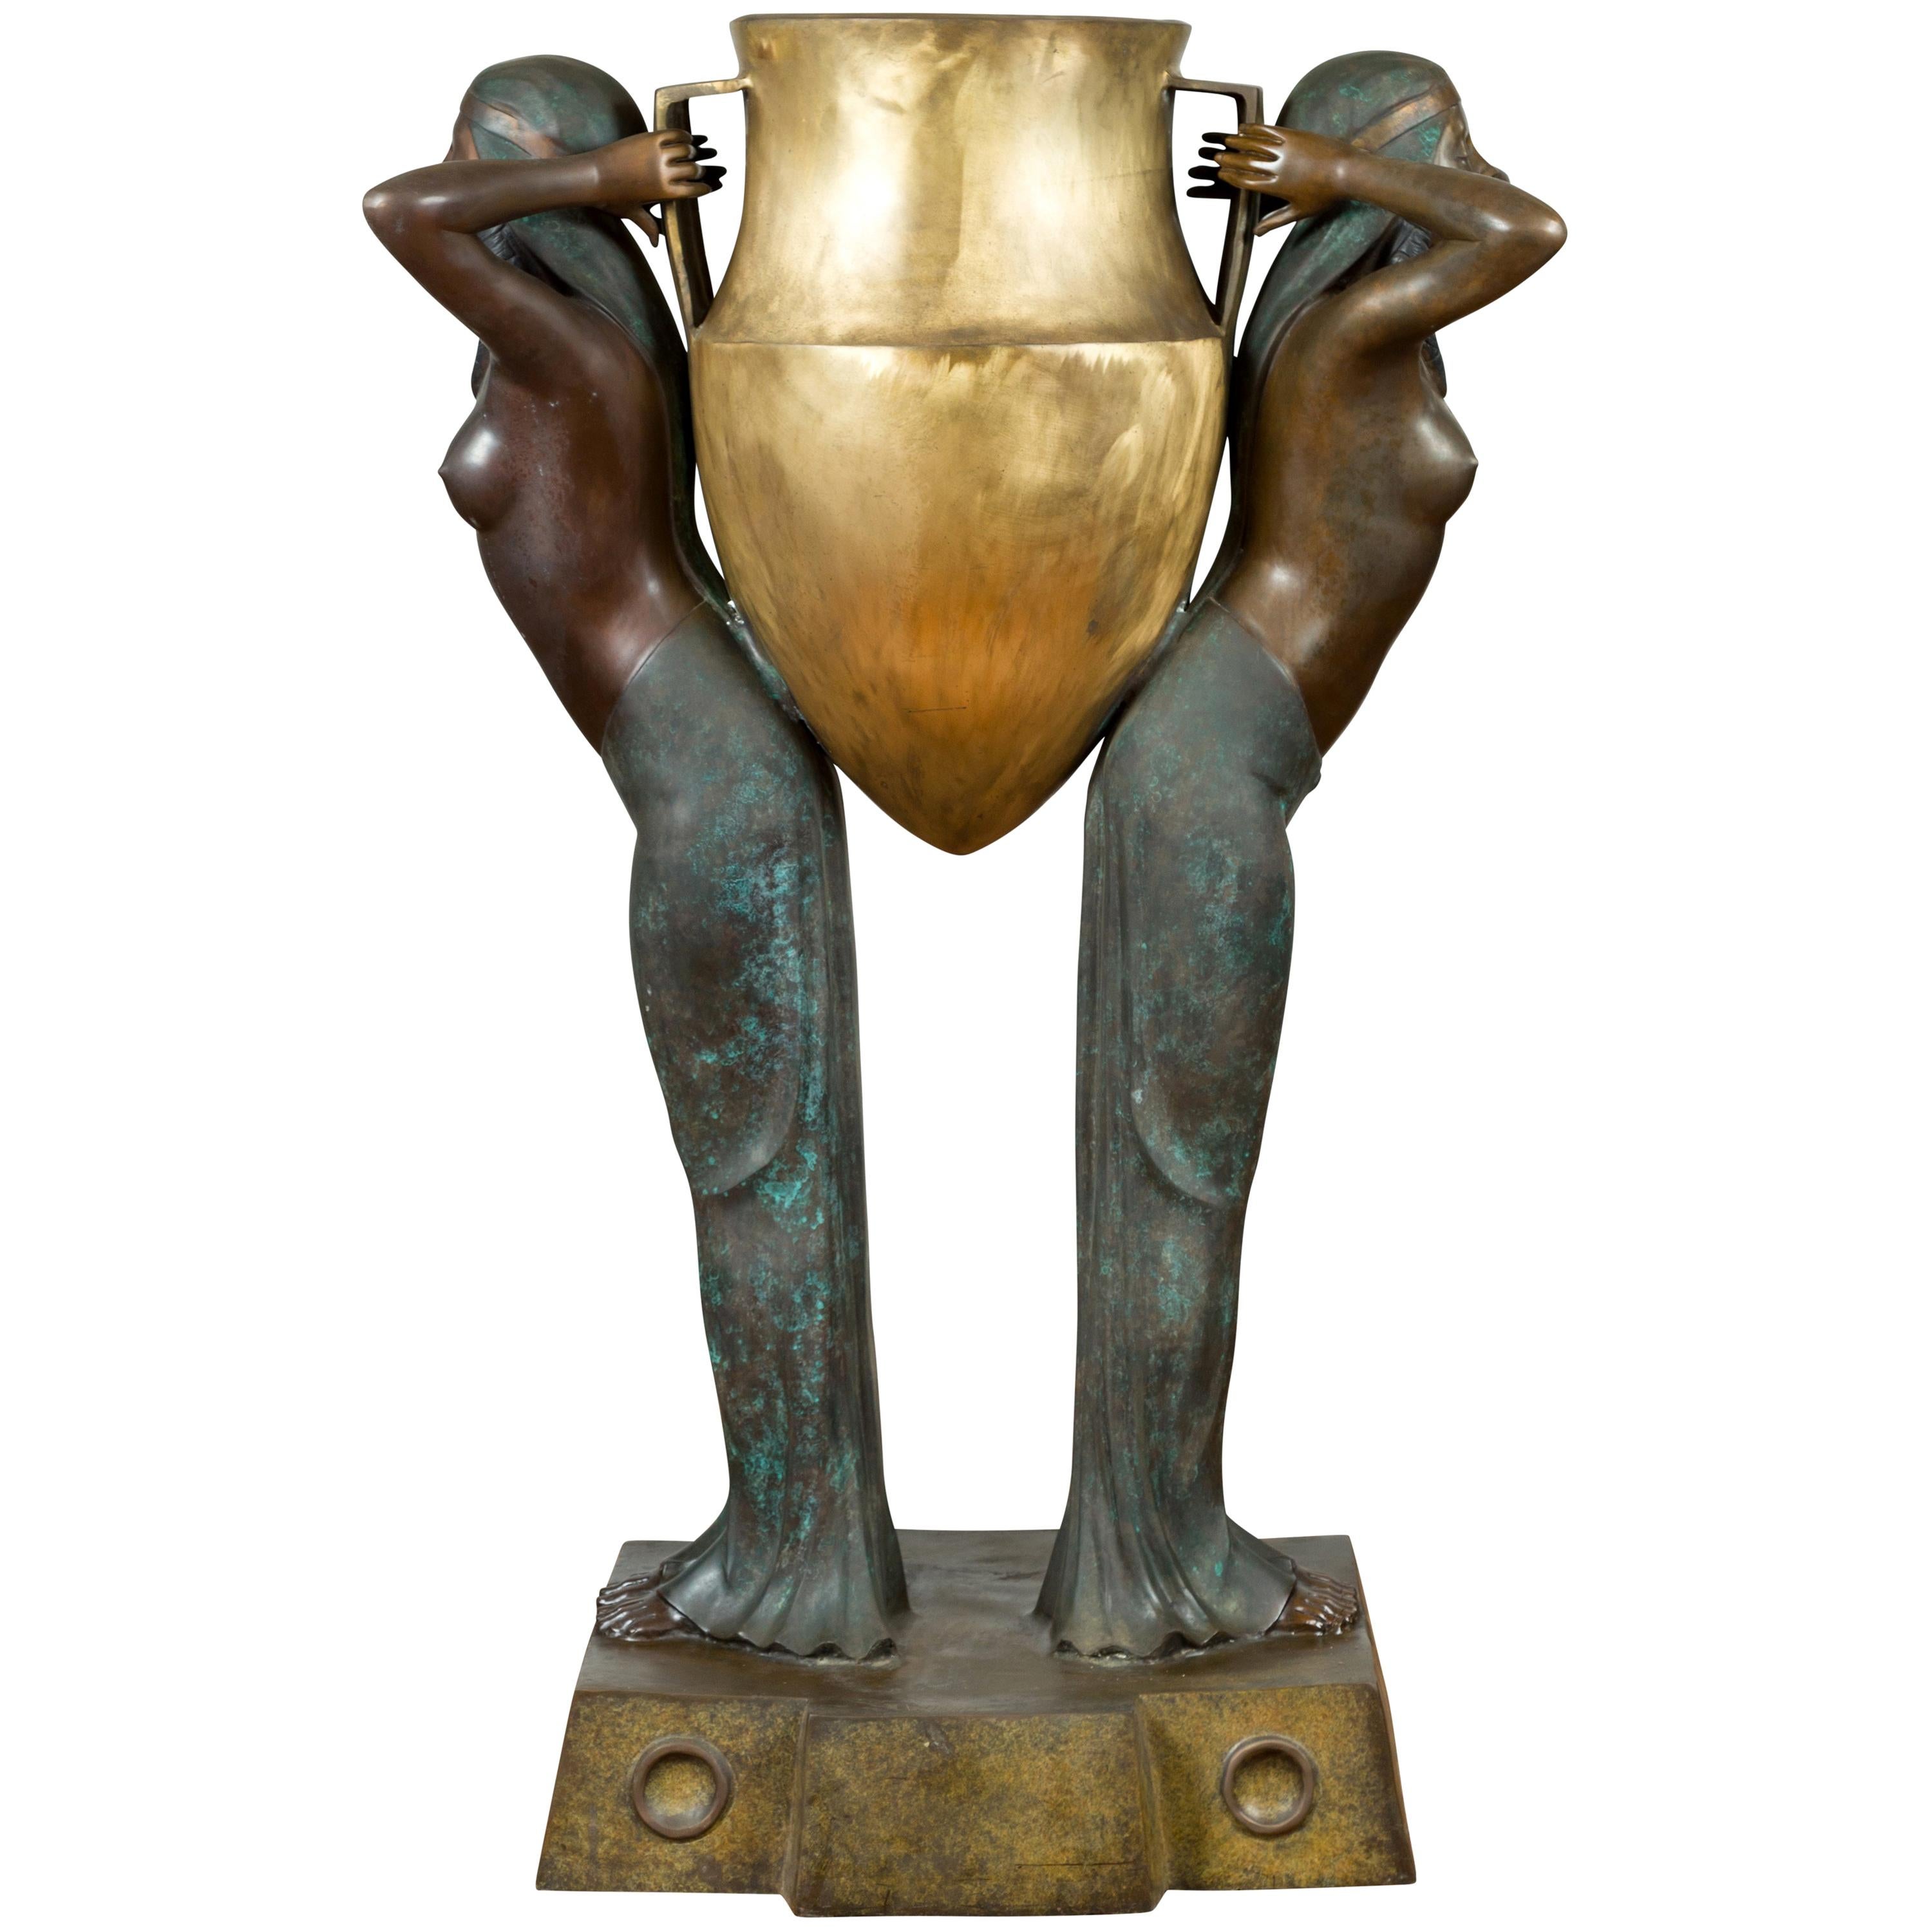 Vintage-Pflanzgefäß aus Bronze im ägyptischen Stil im ägyptischen Stil, mit zwei Jungfrauen, die eine große Urne tragen